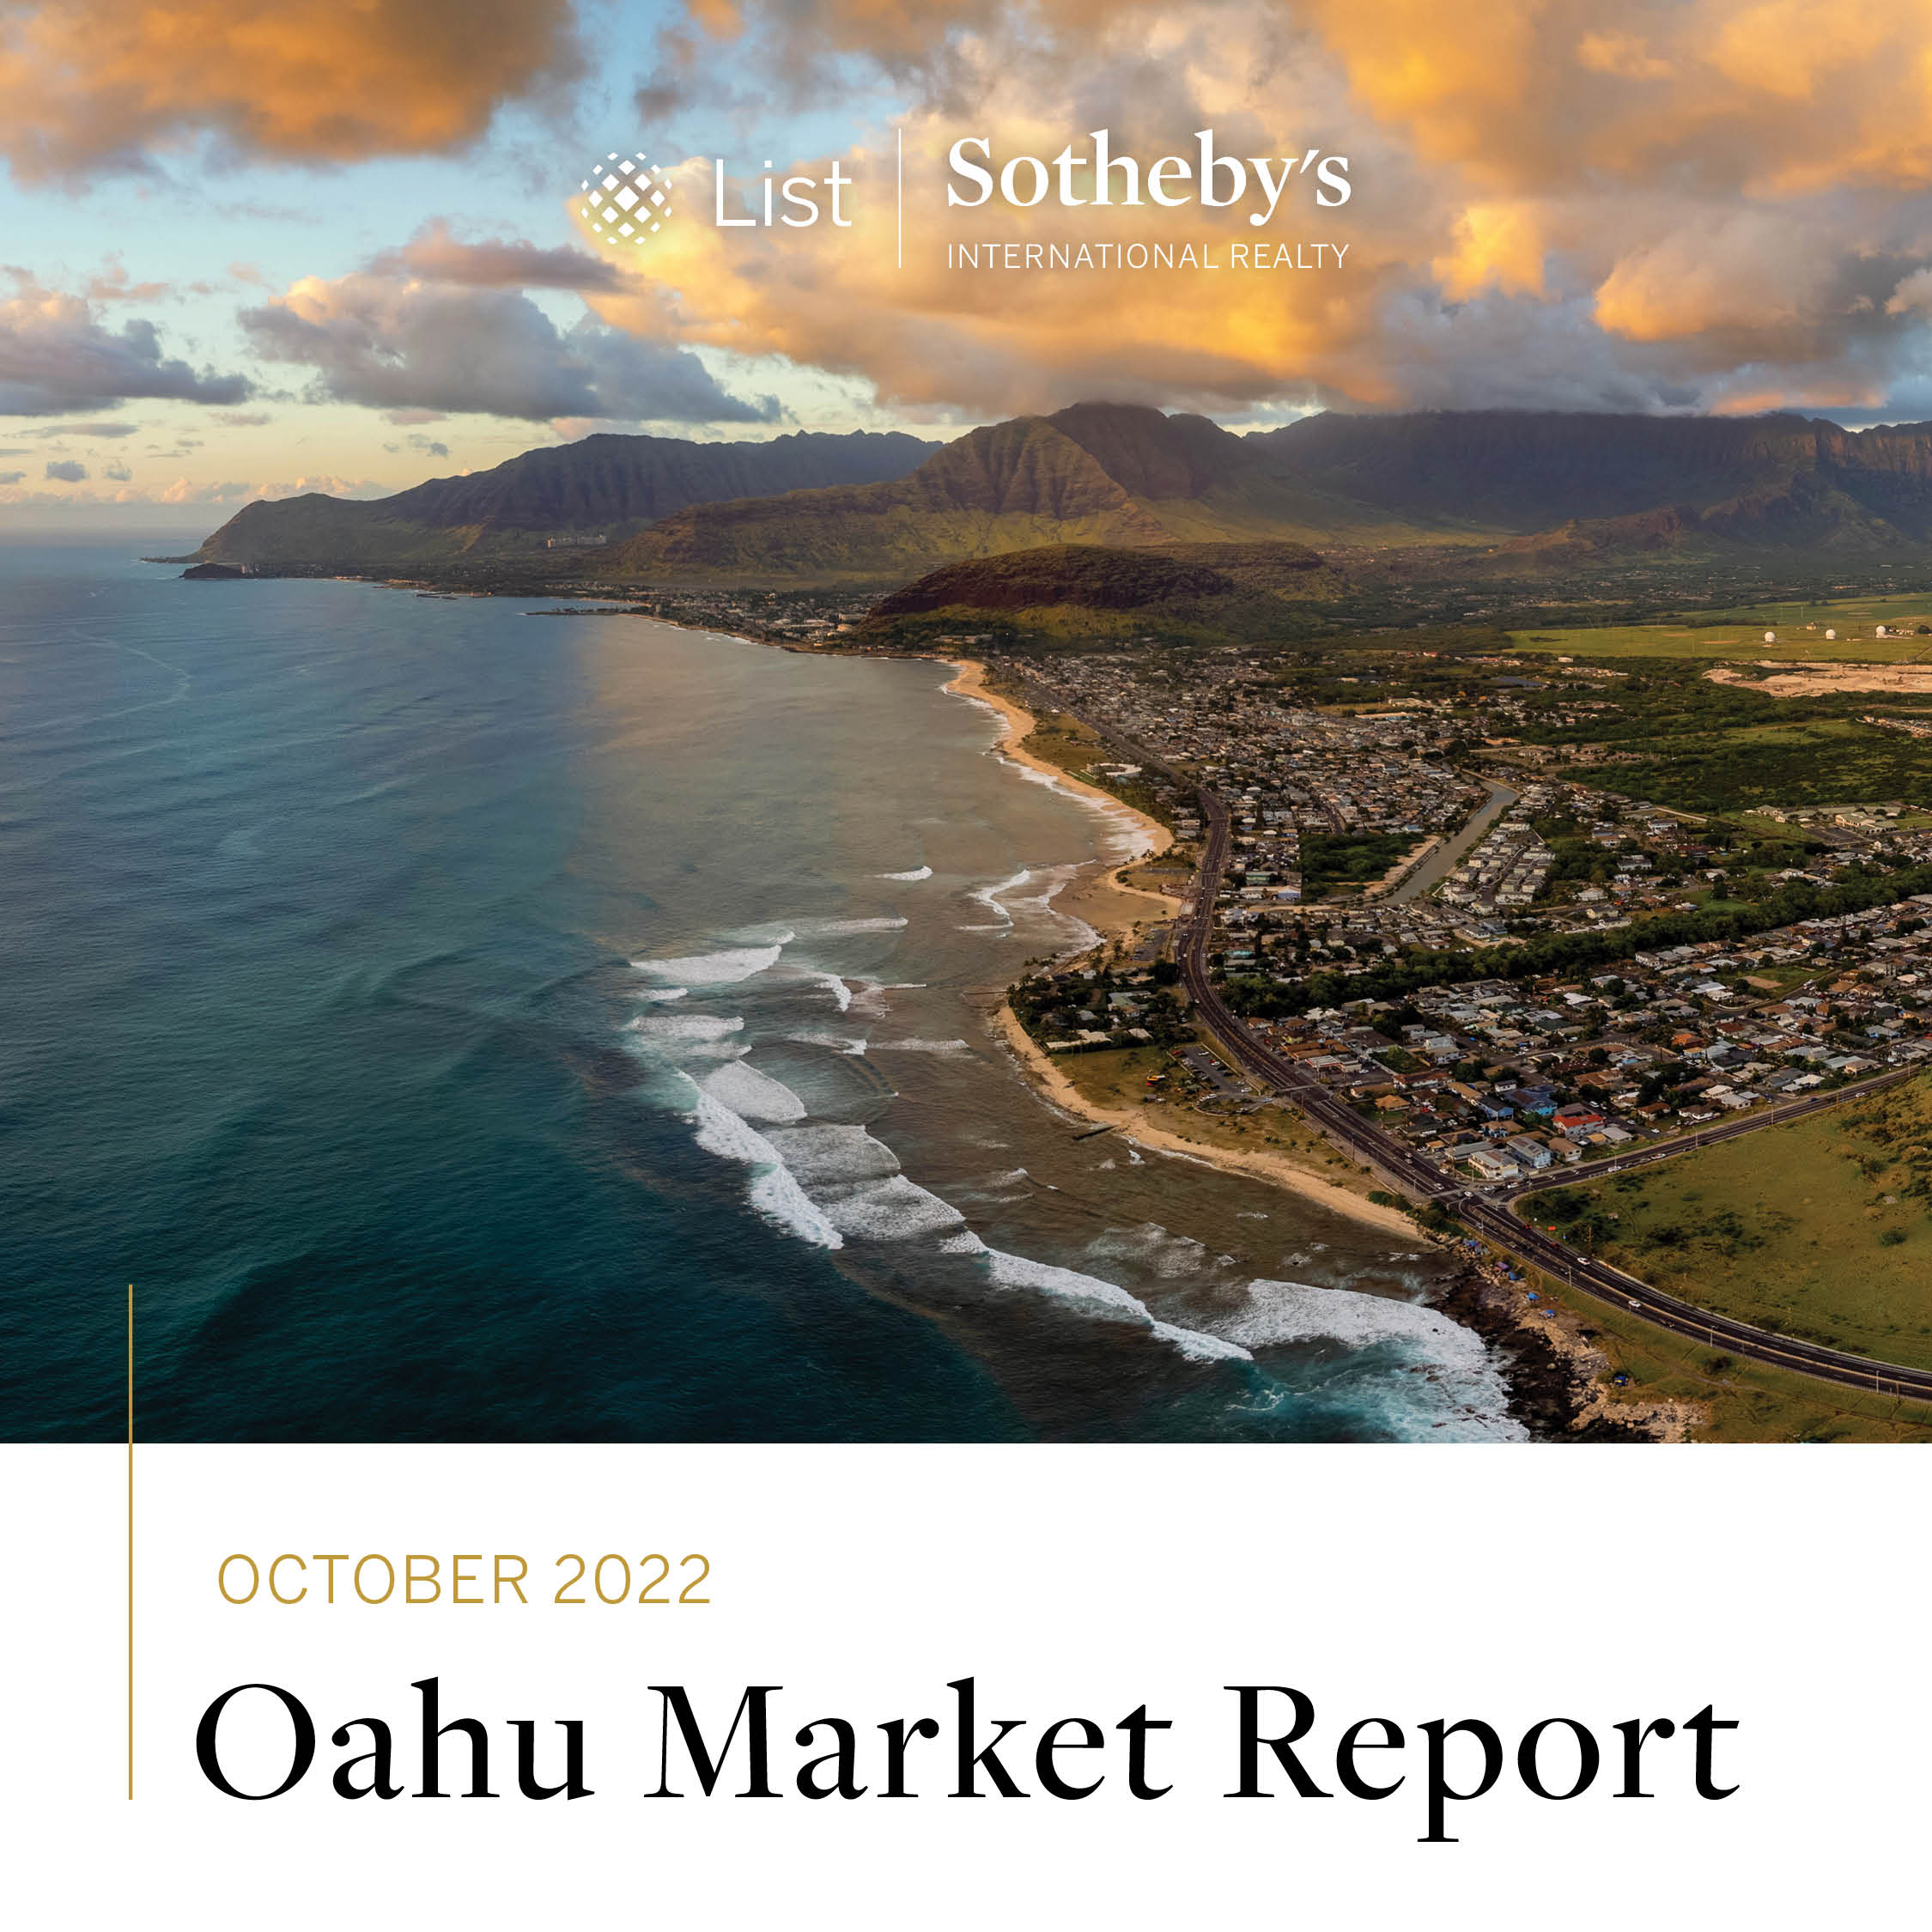 Oahu Market Report October 2022